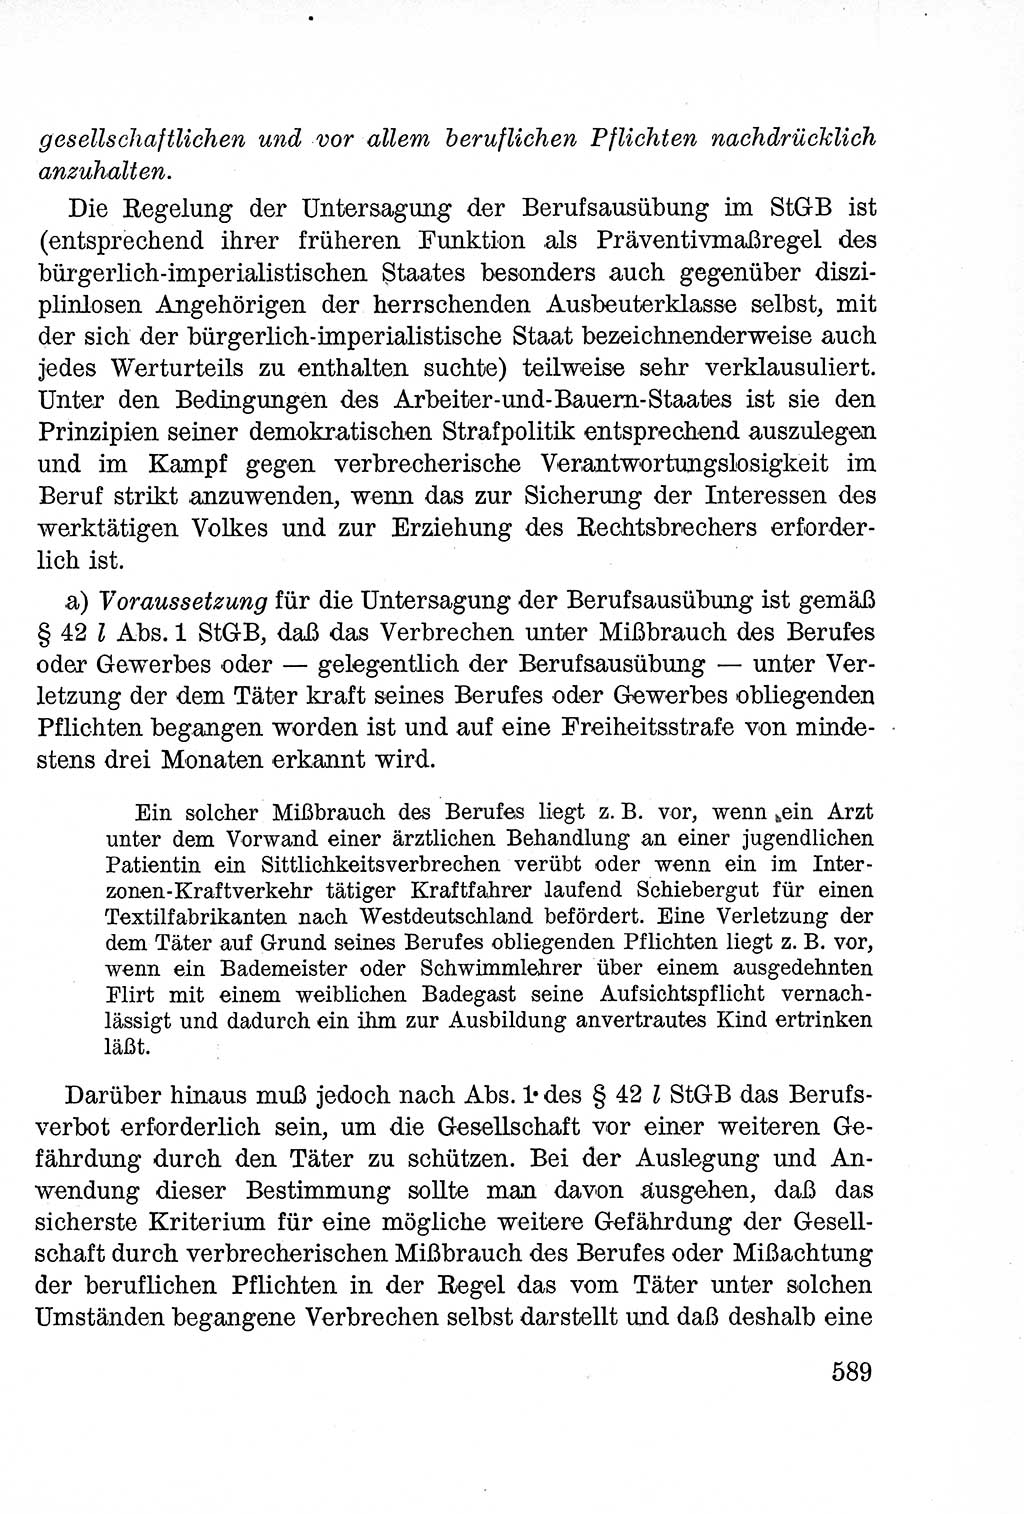 Lehrbuch des Strafrechts der Deutschen Demokratischen Republik (DDR), Allgemeiner Teil 1957, Seite 589 (Lb. Strafr. DDR AT 1957, S. 589)